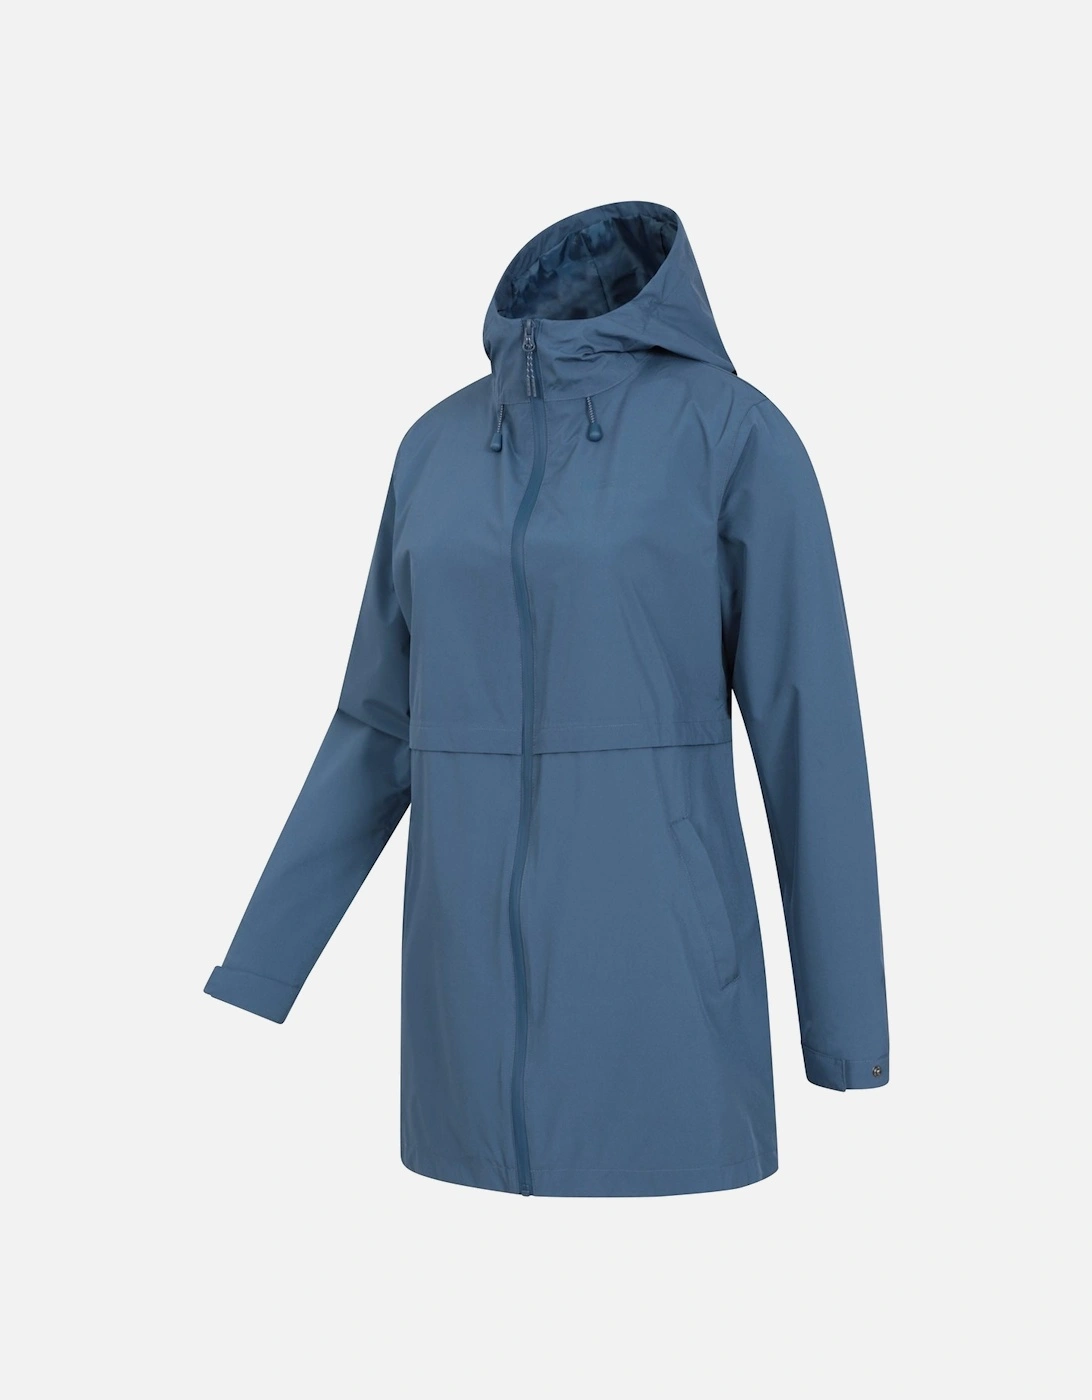 Womens/Ladies Hilltop II Waterproof Jacket